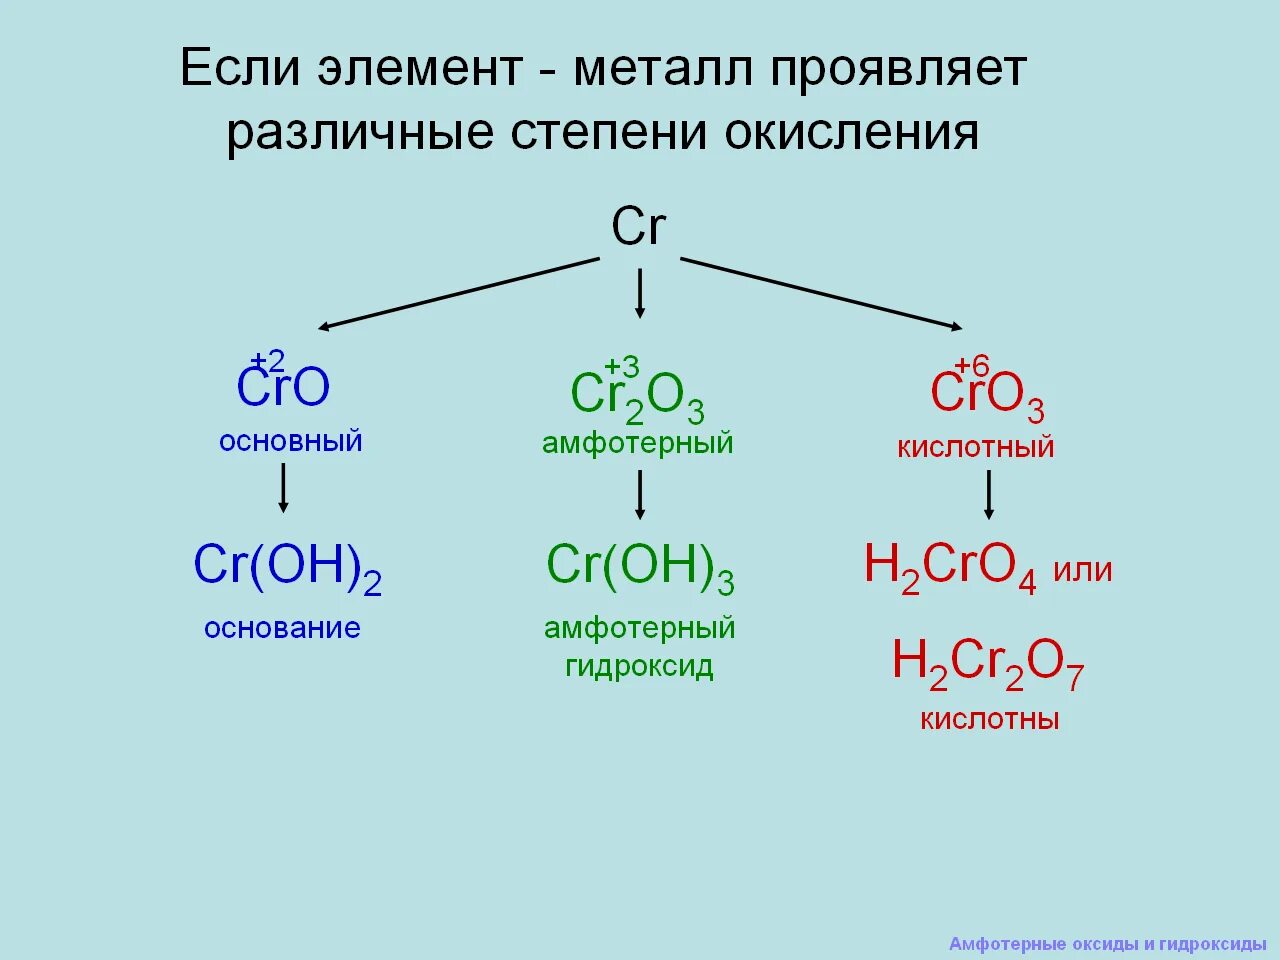 Как отличить амфотерные. Амфотерные оксиды и гидроксиды 9 класс объяснение. Химия 8 класс амфотерные гидроксиды. Химия 9 класс амфотерные оксиды. Амфотерные оксиды и гидроксиды 8 класс конспект.